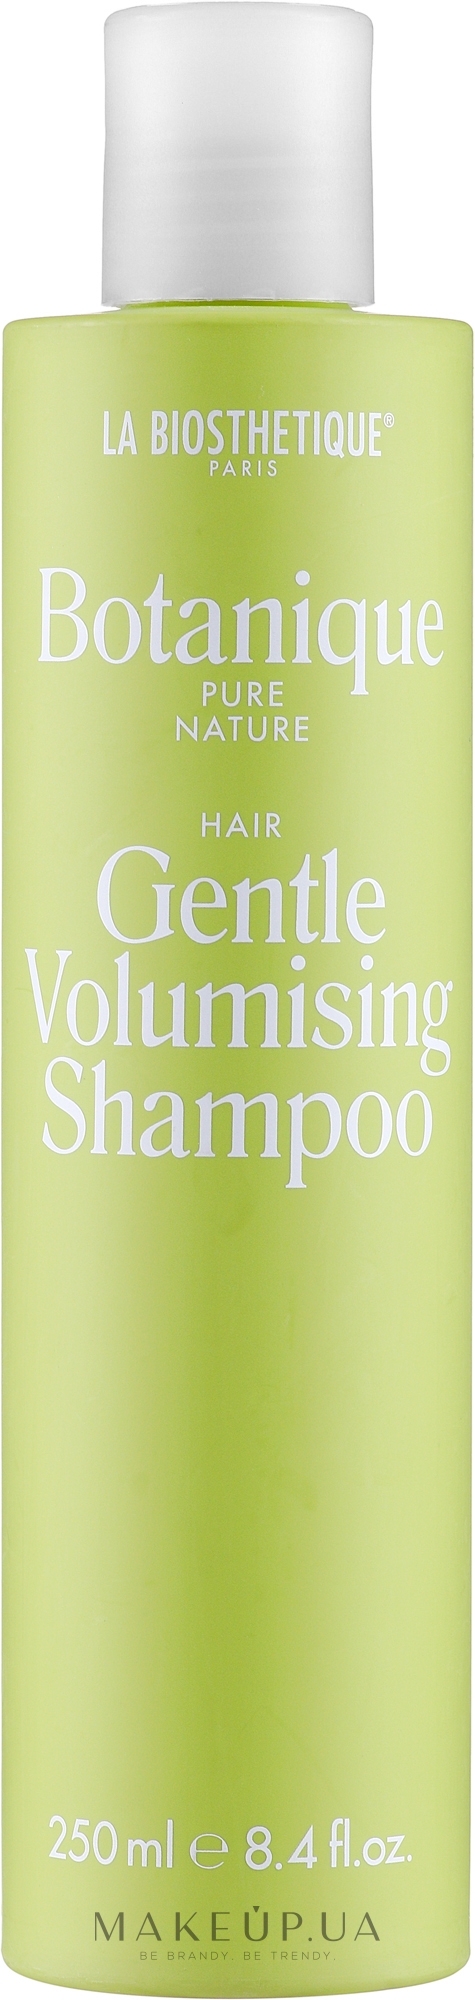 Безсульфатний зміцнювальний шампунь для тонкого волосся - La Biosthetique Botanique Pure Nature Gentle Volumising Shampoo — фото 250ml